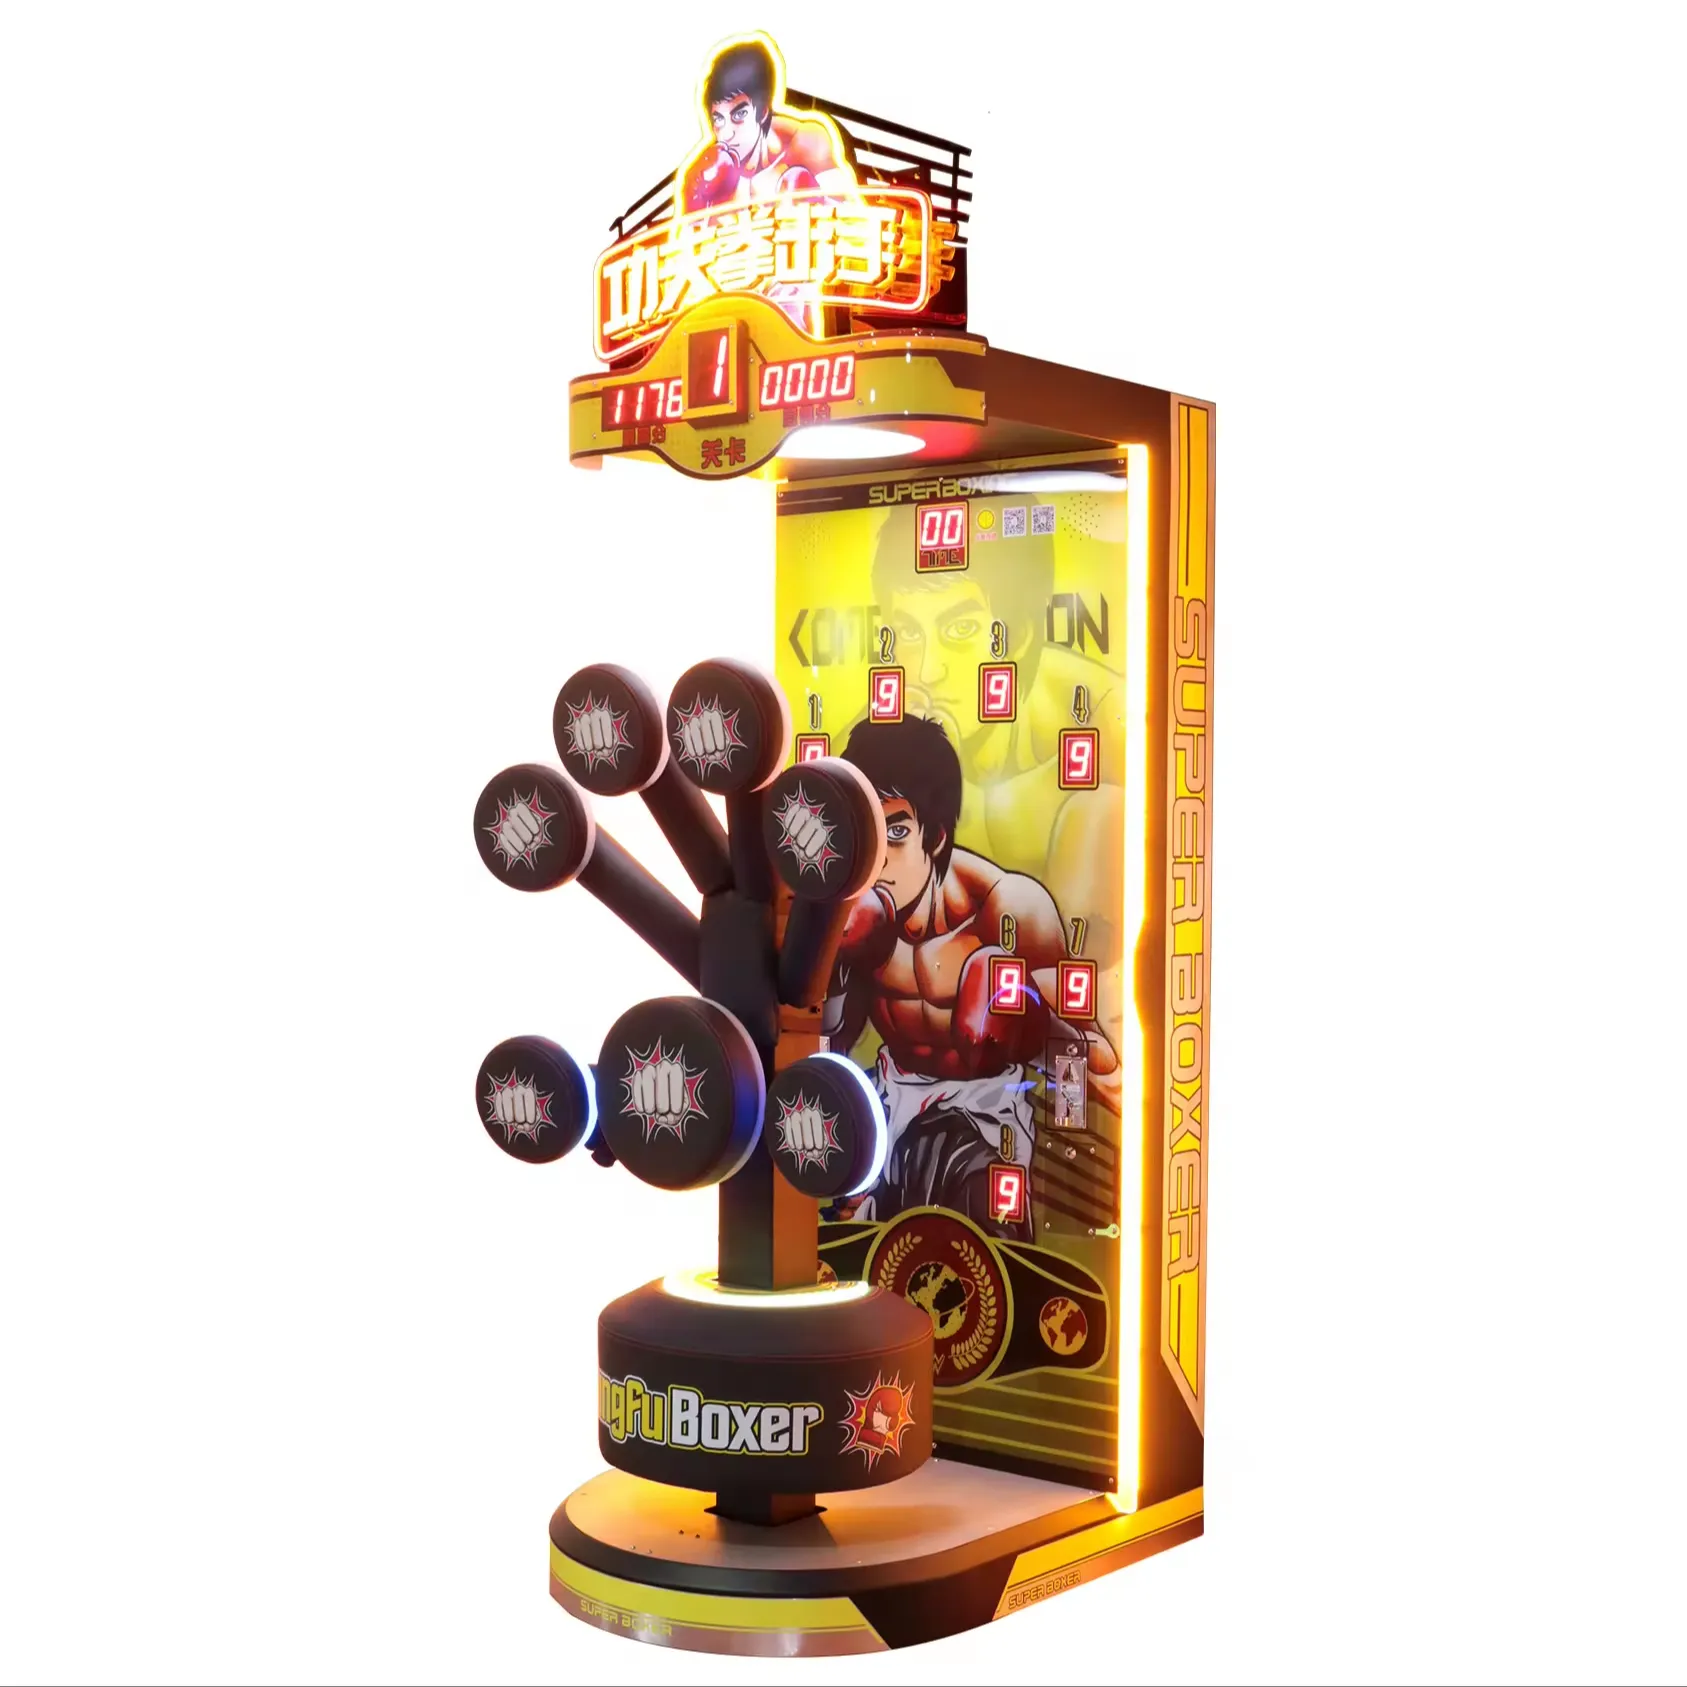 Musica boxe Street Box-er gioco altri prodotti di boxe attrezzature per boxe Mma arcade machine